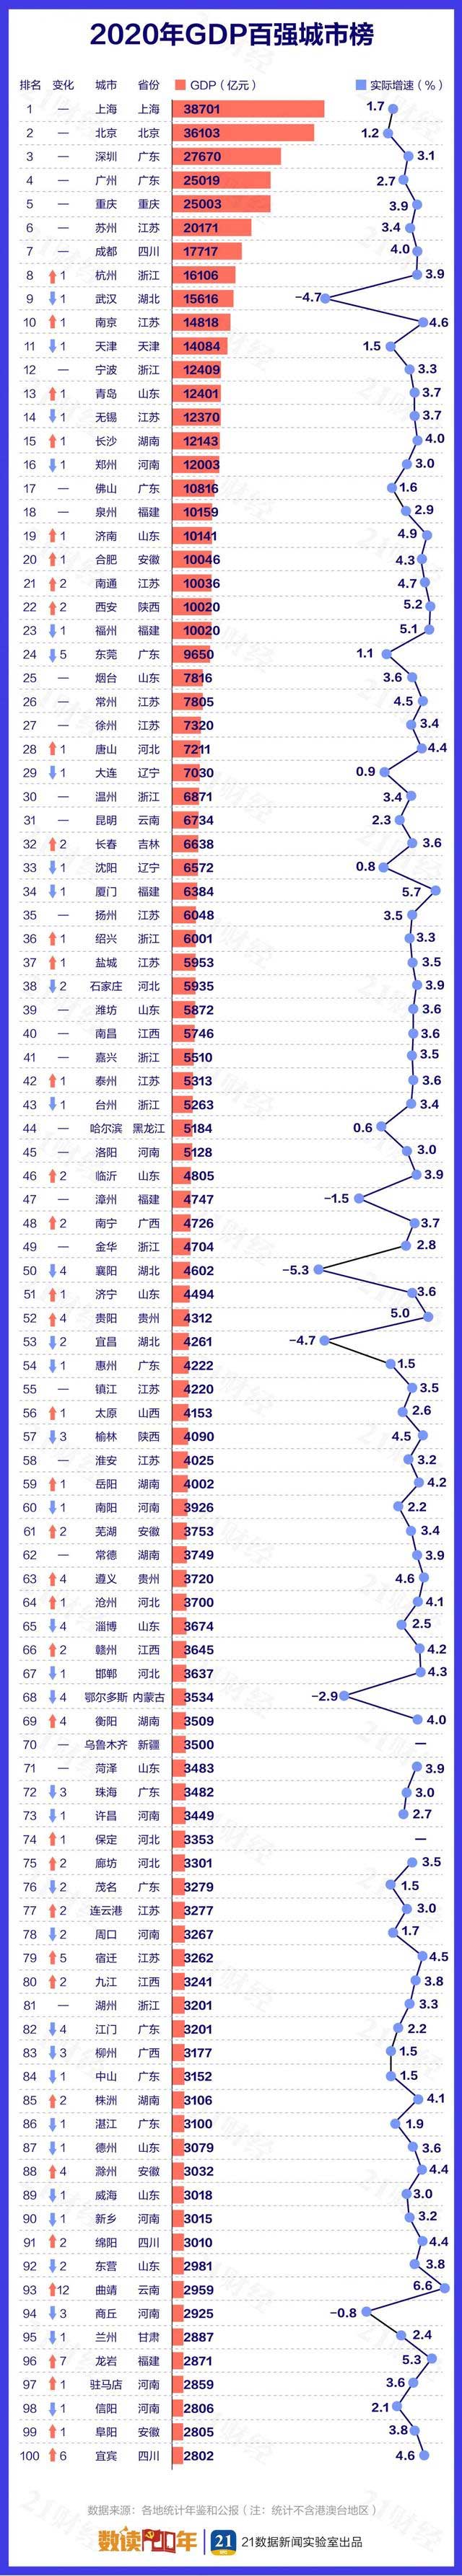 2020年中国城市GDP百强榜